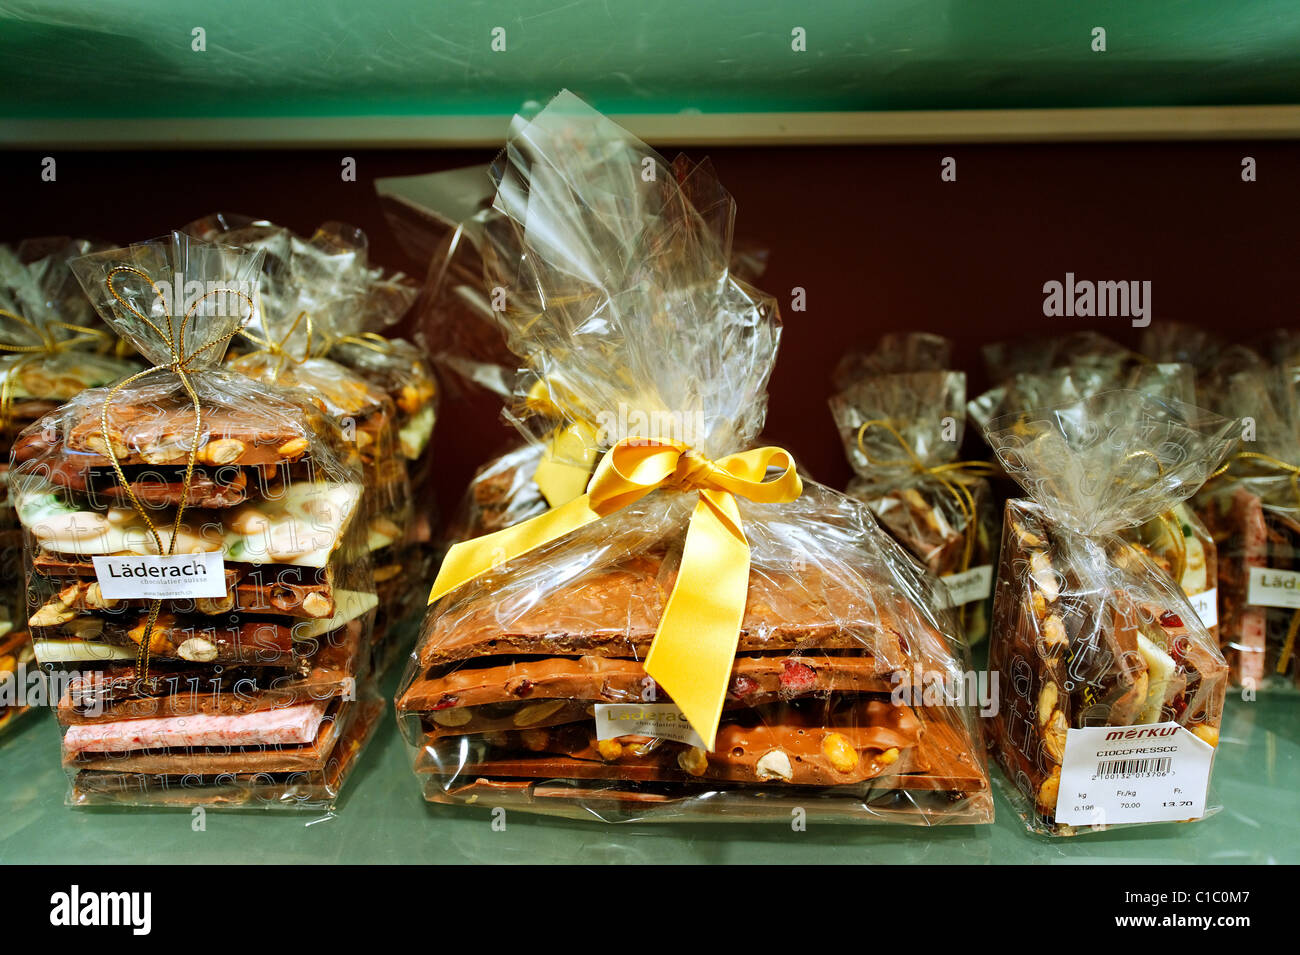 Boutique de chocolat Laderach Merkur, Via Nassa, Lugano, Suisse, Europe Banque D'Images